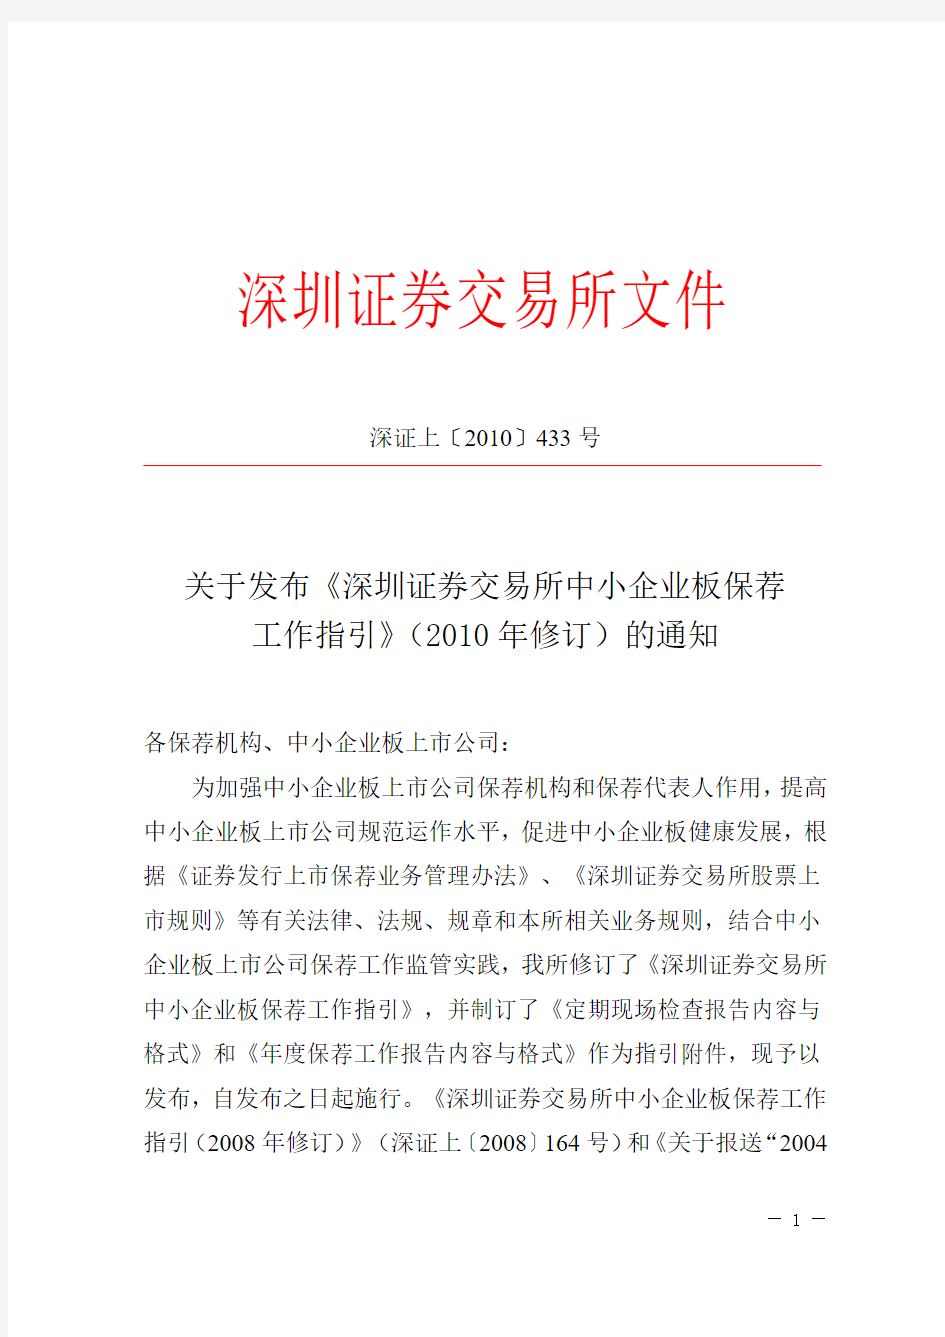 《深圳证券交易所中小企业板保荐工作指引》(2010年修订)的通知